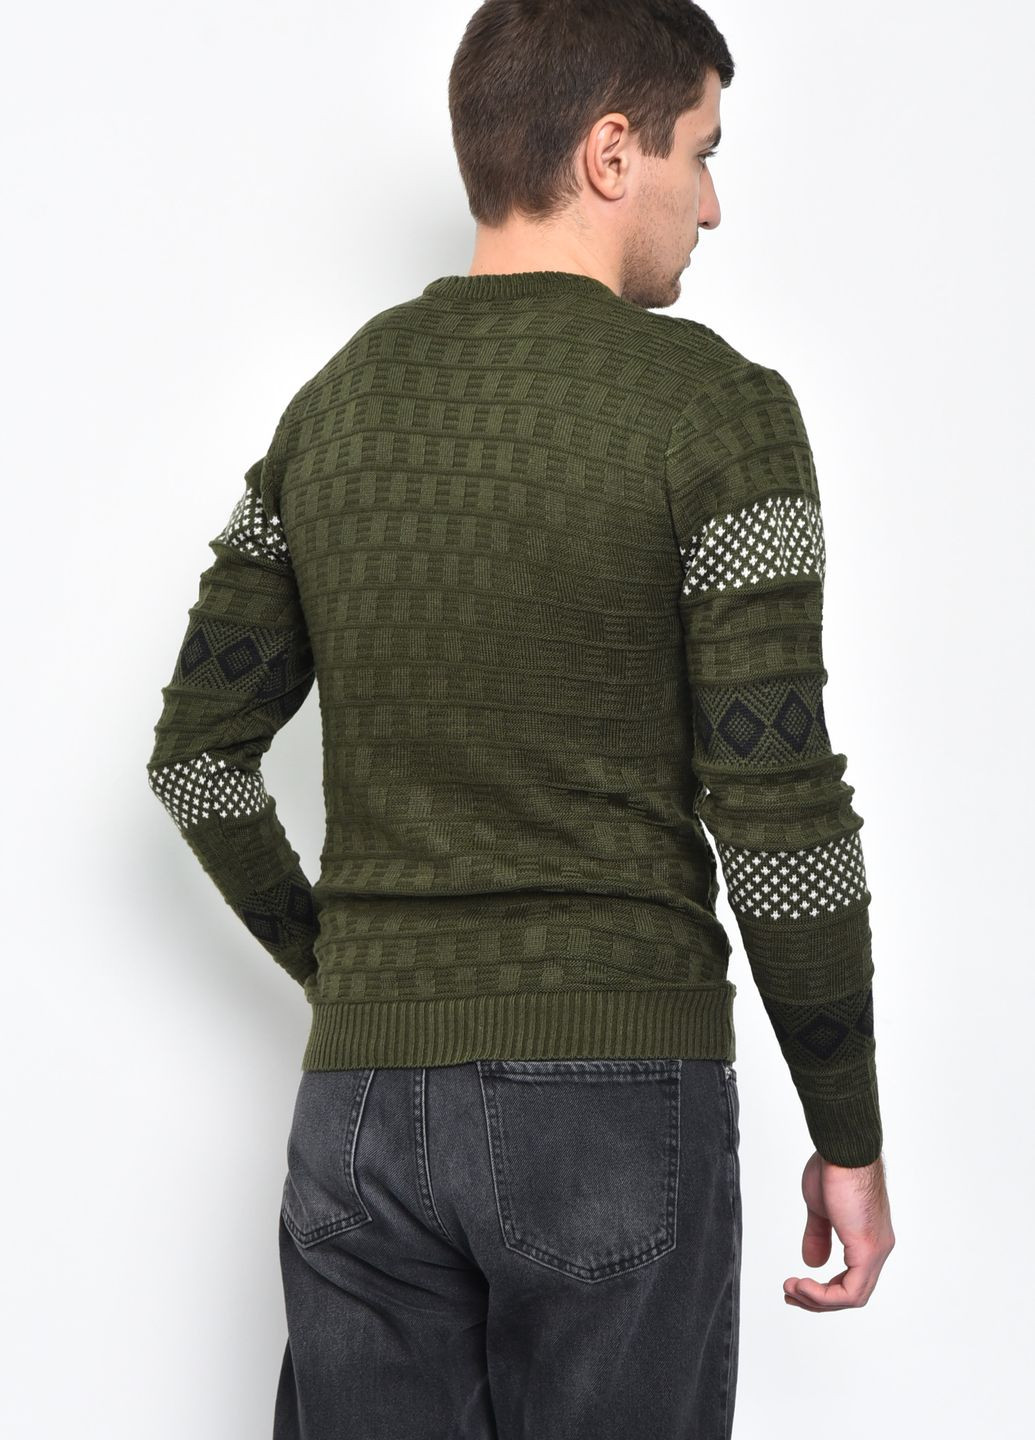 Зеленый демисезонный свитер мужской зеленого цвета акриловый пуловер Let's Shop